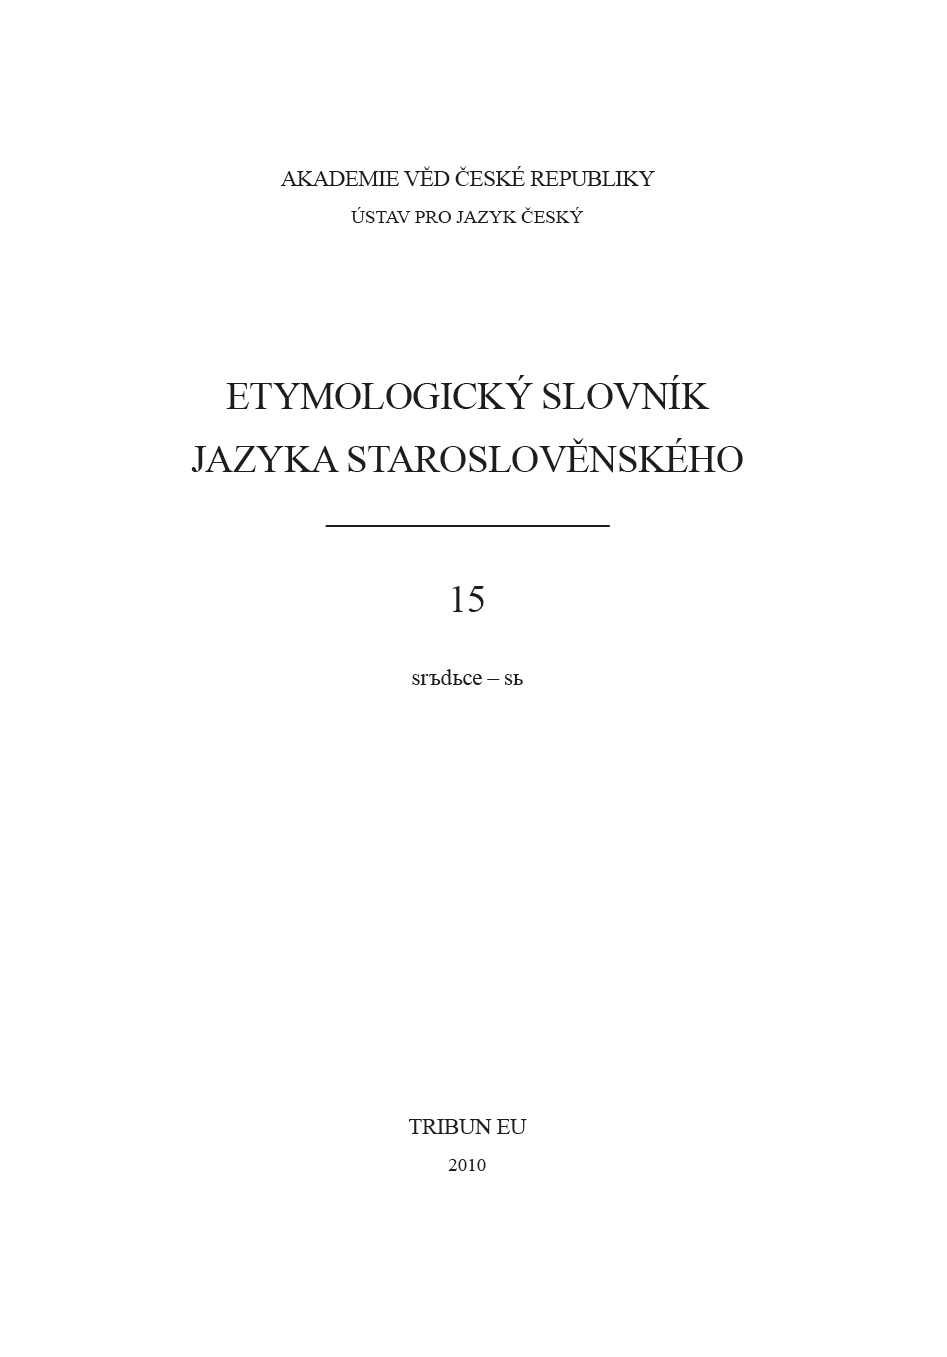 Etymologický slovník jazyka staroslověnského 15